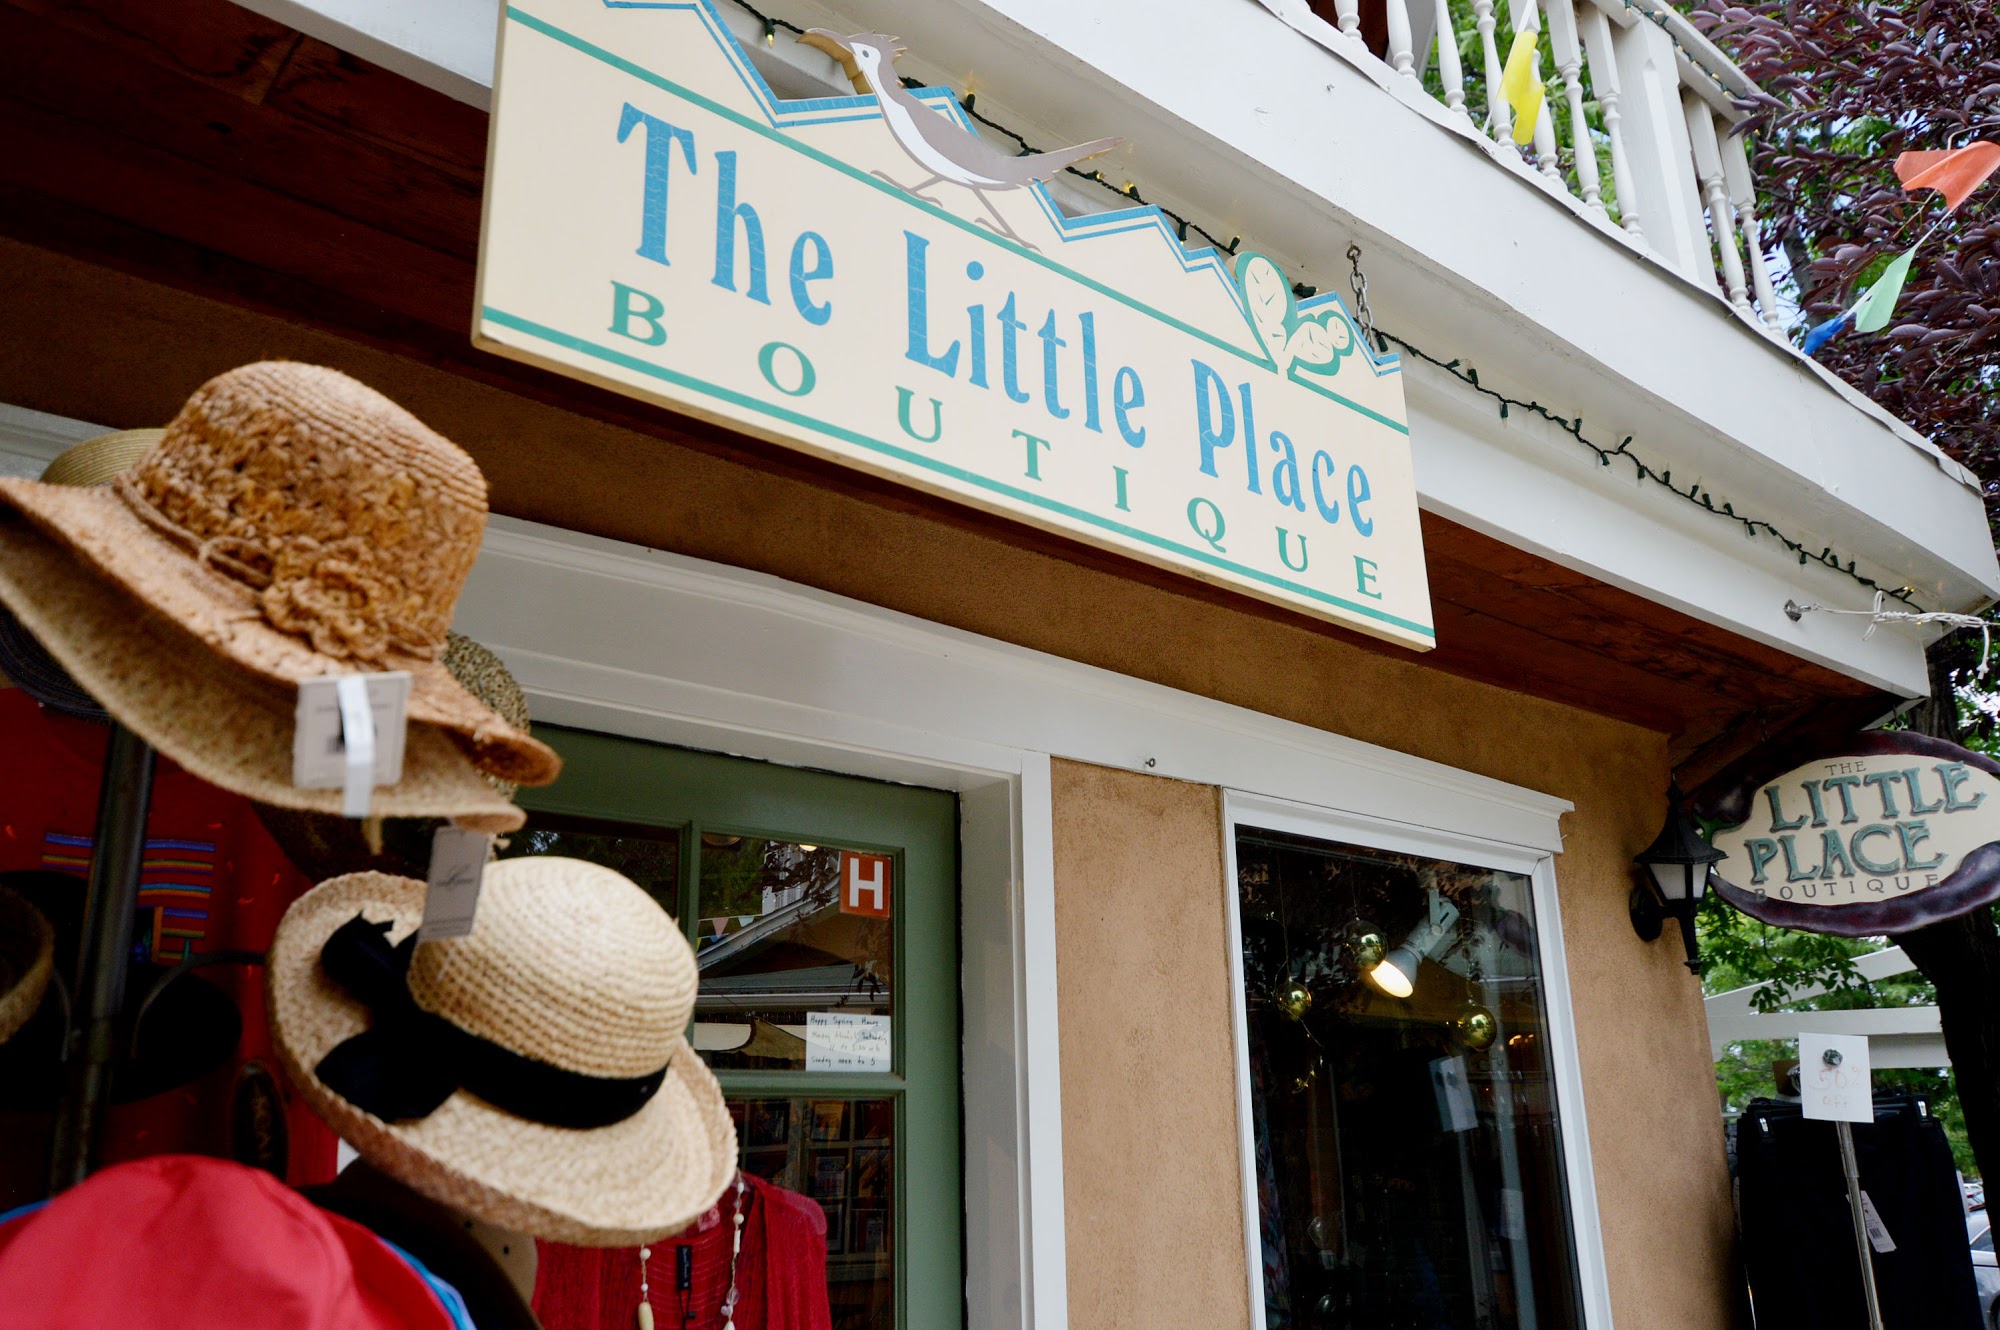 The Little Place Boutique